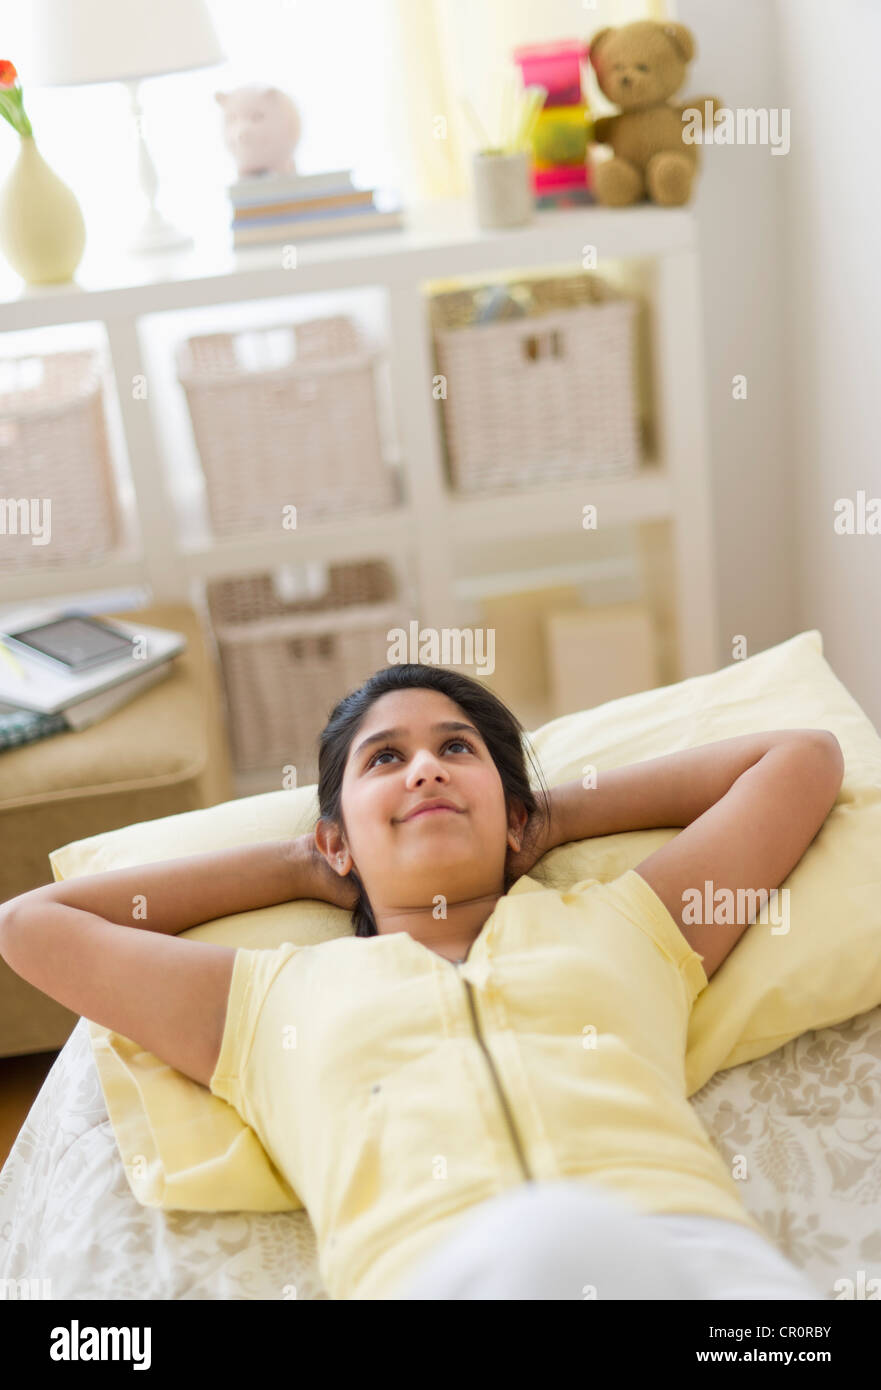 Stati Uniti d'America, New Jersey, Jersey City, ragazza (12-13) giacente sul letto Foto Stock